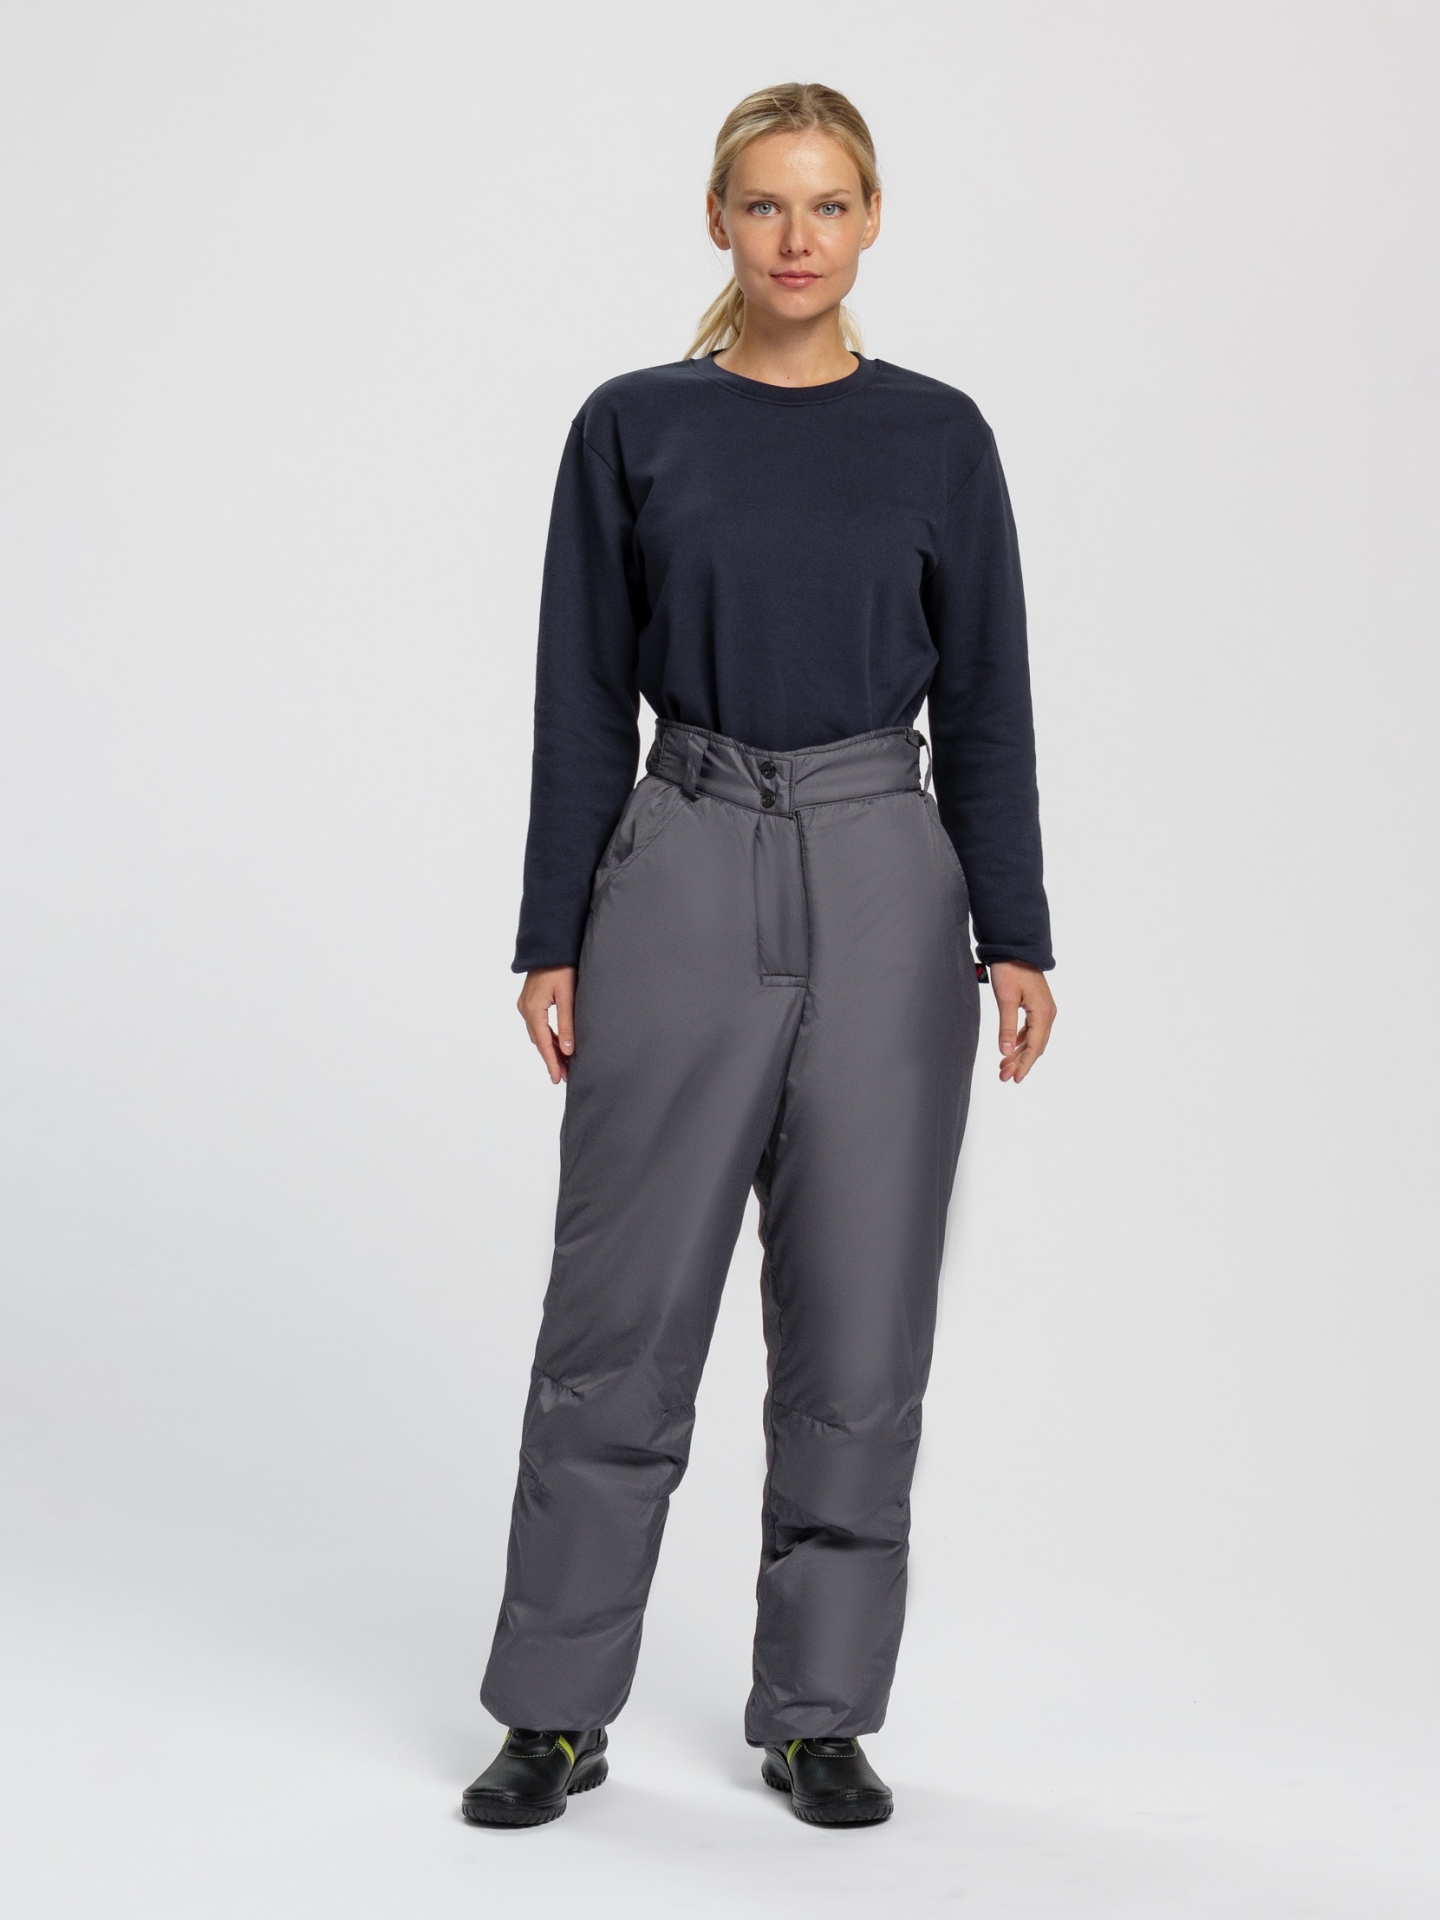 Зимние брюки "СНЕЖАНА" женские, утепленные, цвет: серый, ткань: 100% ПЭ